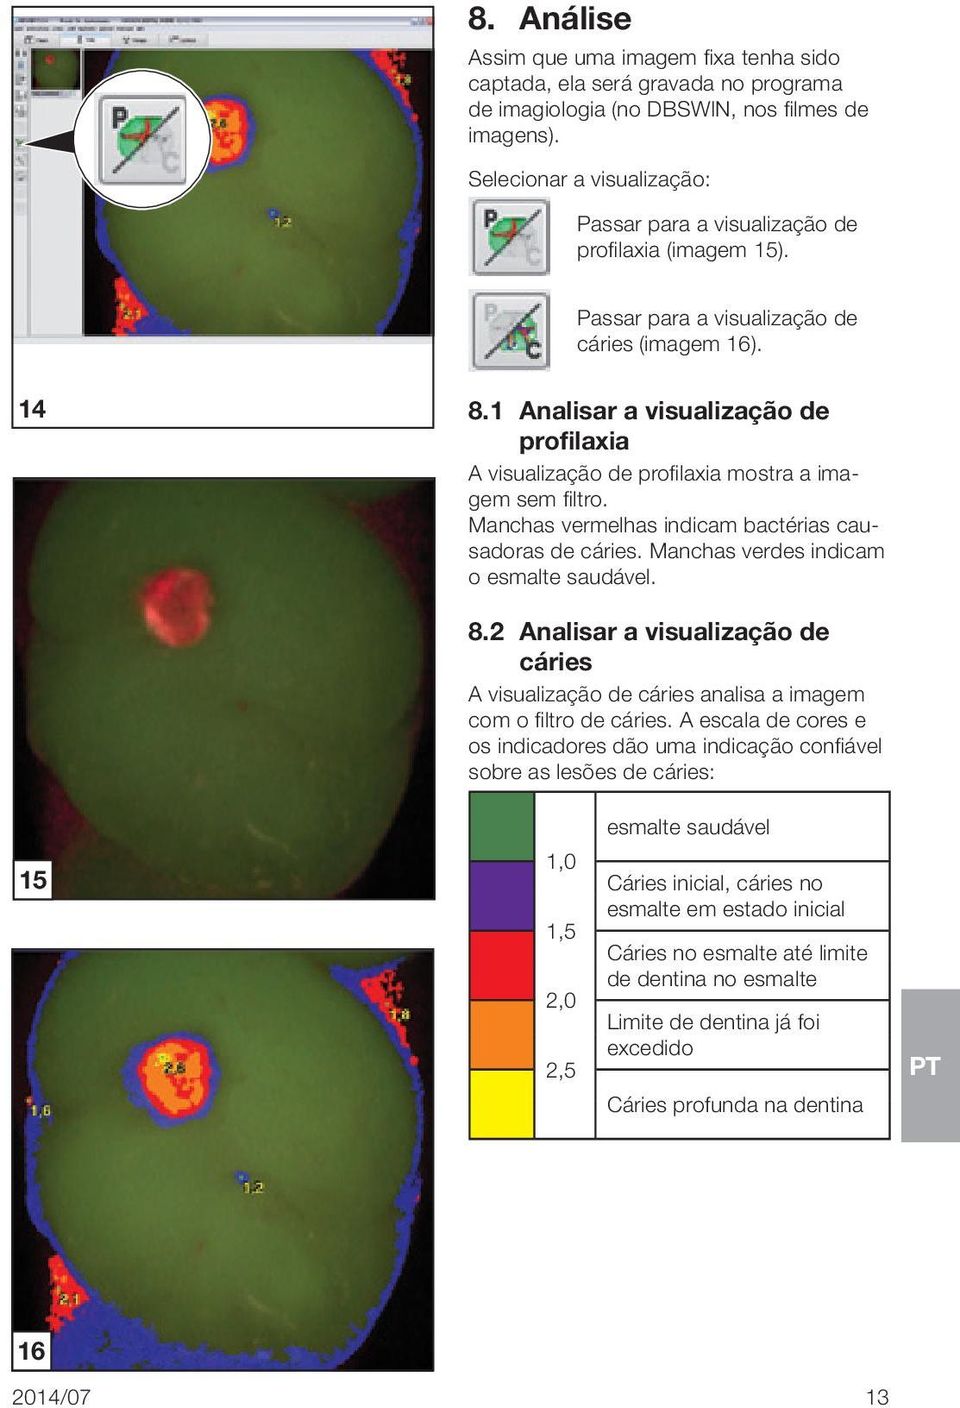 1 Analisar a visualização de profilaxia A visualização de profilaxia mostra a imagem sem filtro. Manchas vermelhas indicam bactérias causadoras de cáries. Manchas verdes indicam o esmalte saudável. 8.